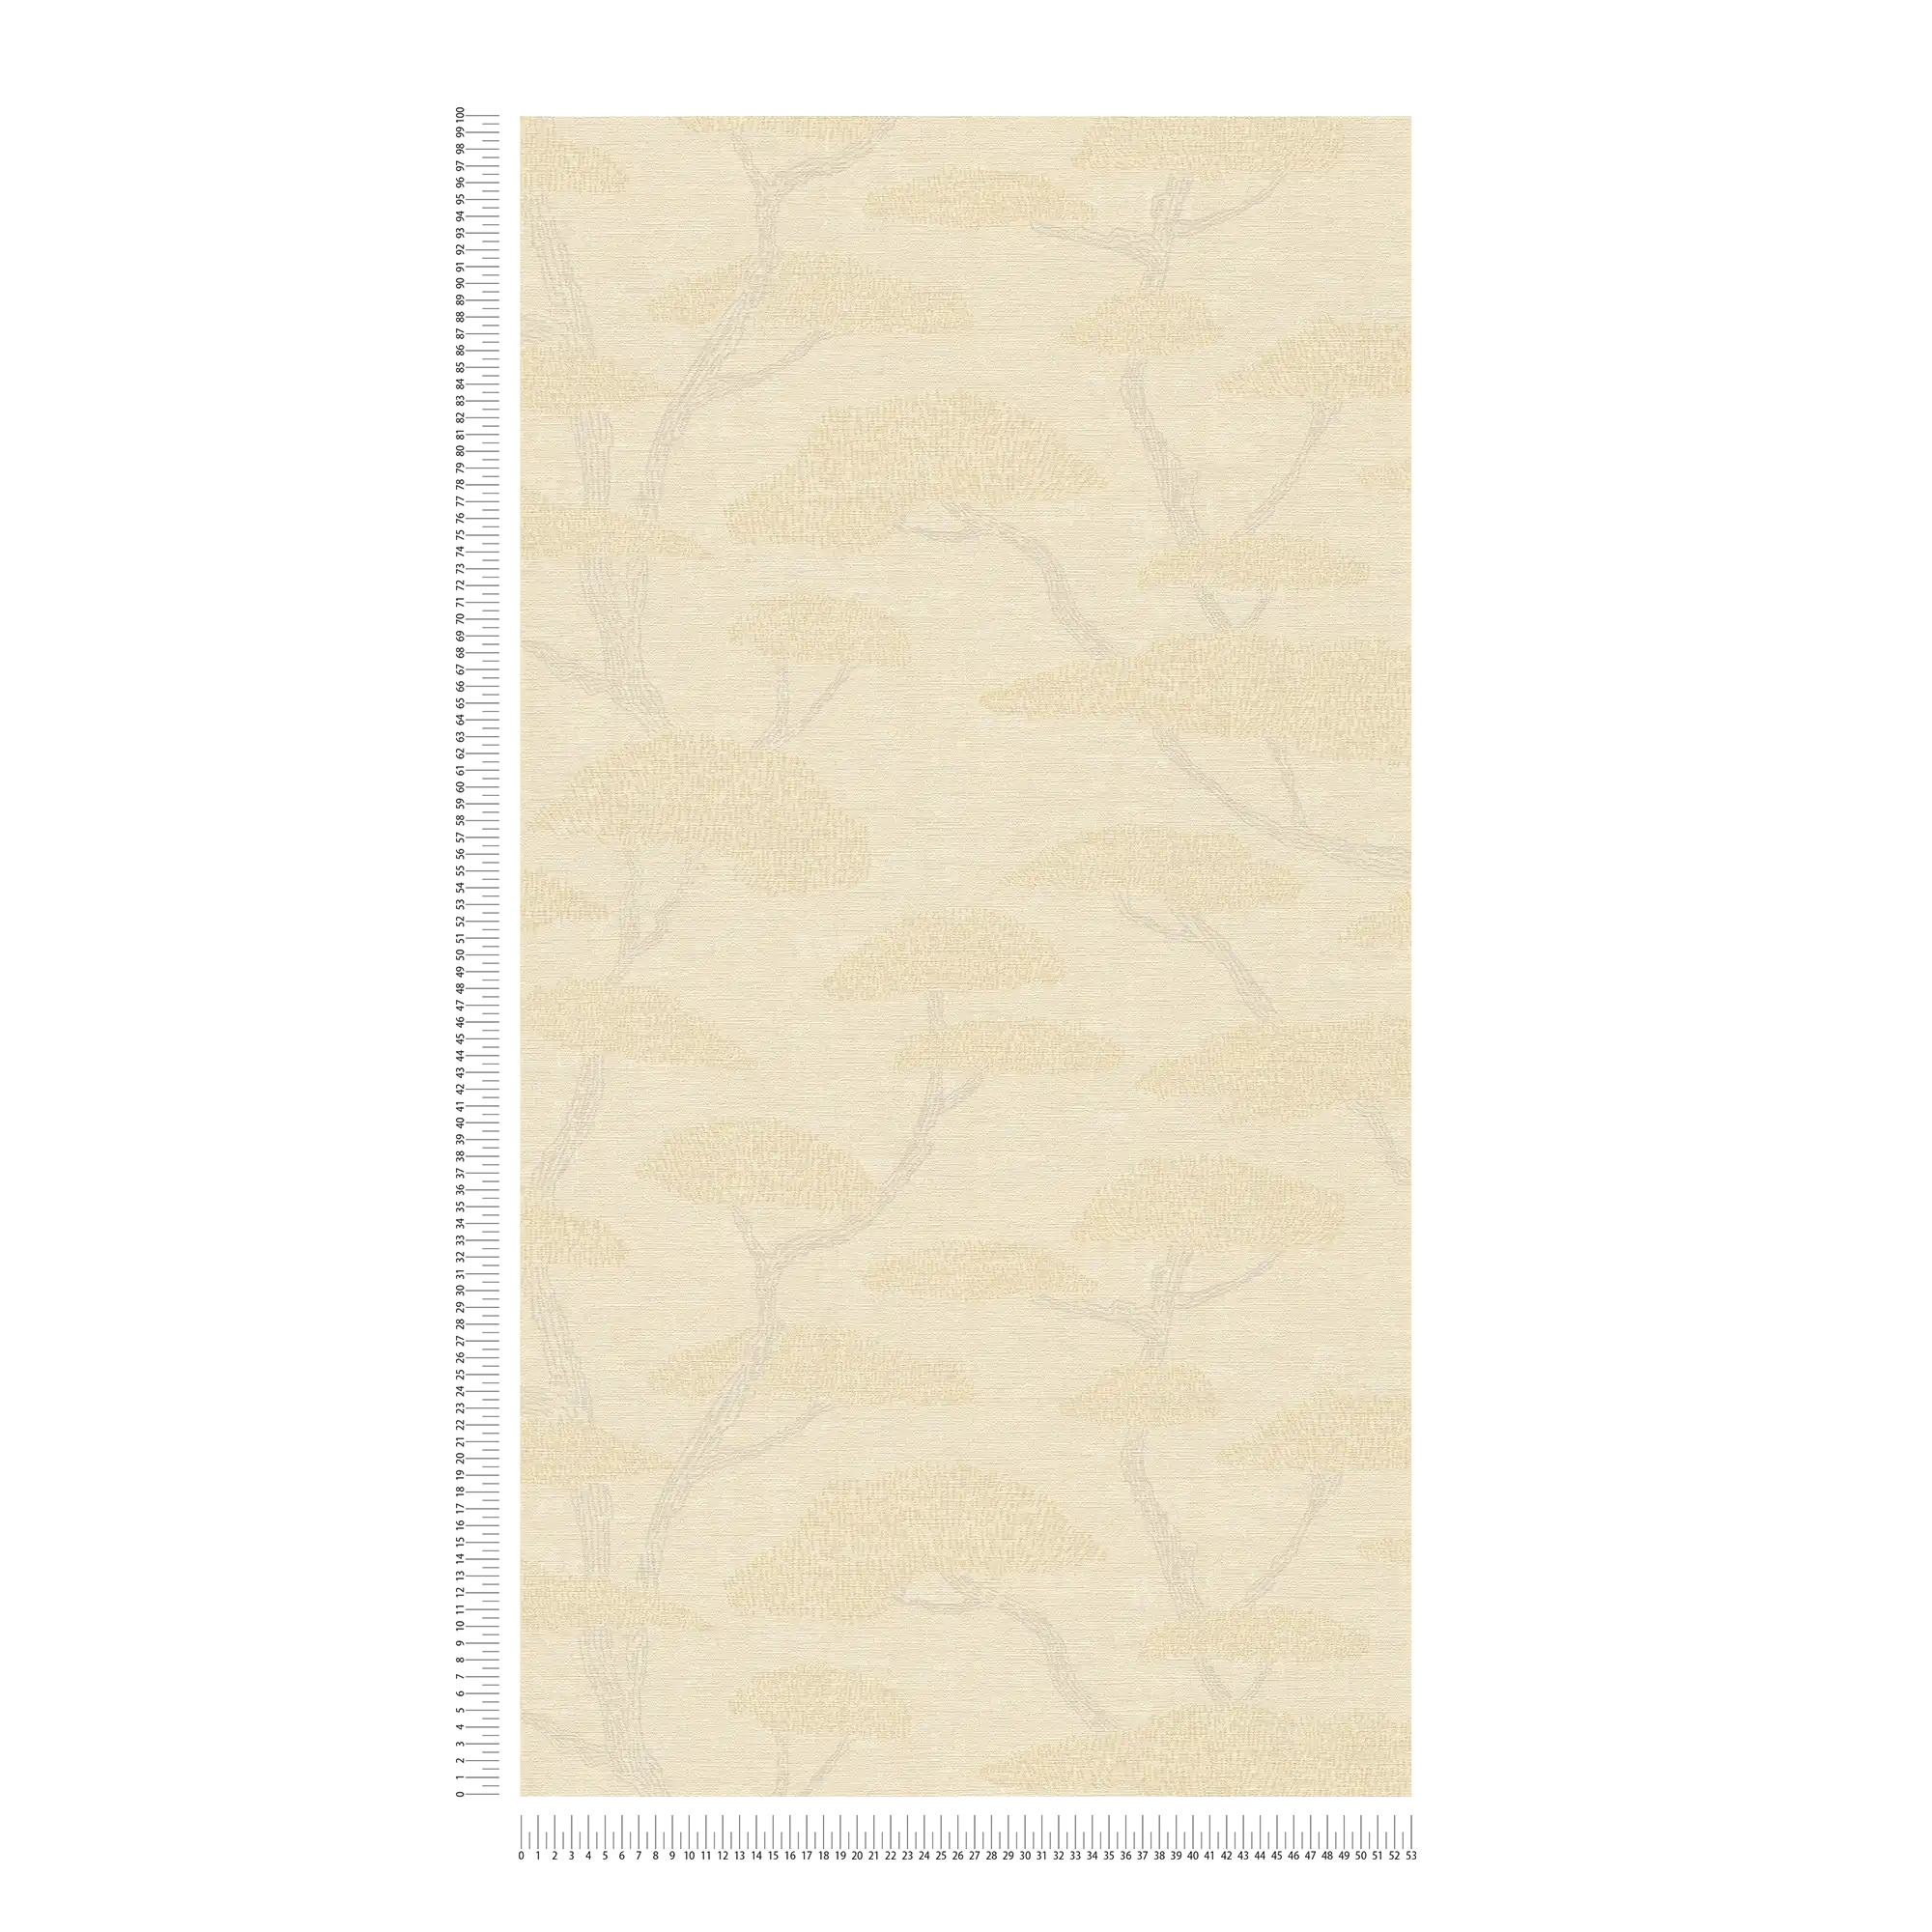             Vintage Tapete Baum Design Pinien – Creme, Beige
        